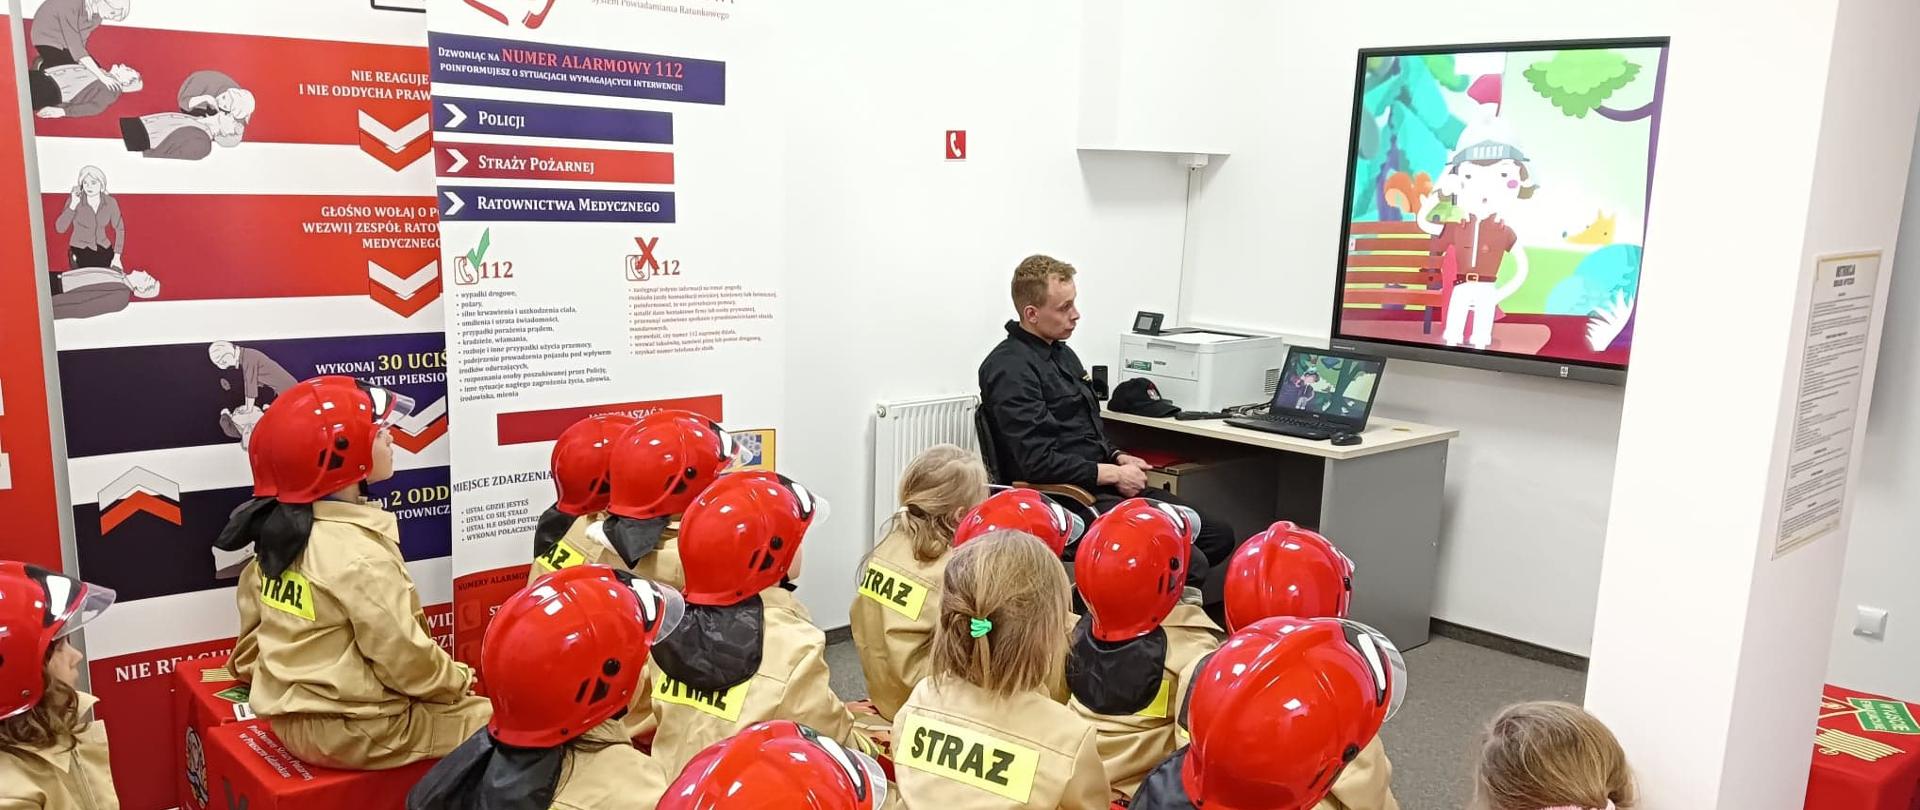 Na zdjęciu widzimy strażaka i grupę dzieci podczas oglądania filmów edukacyjnych.